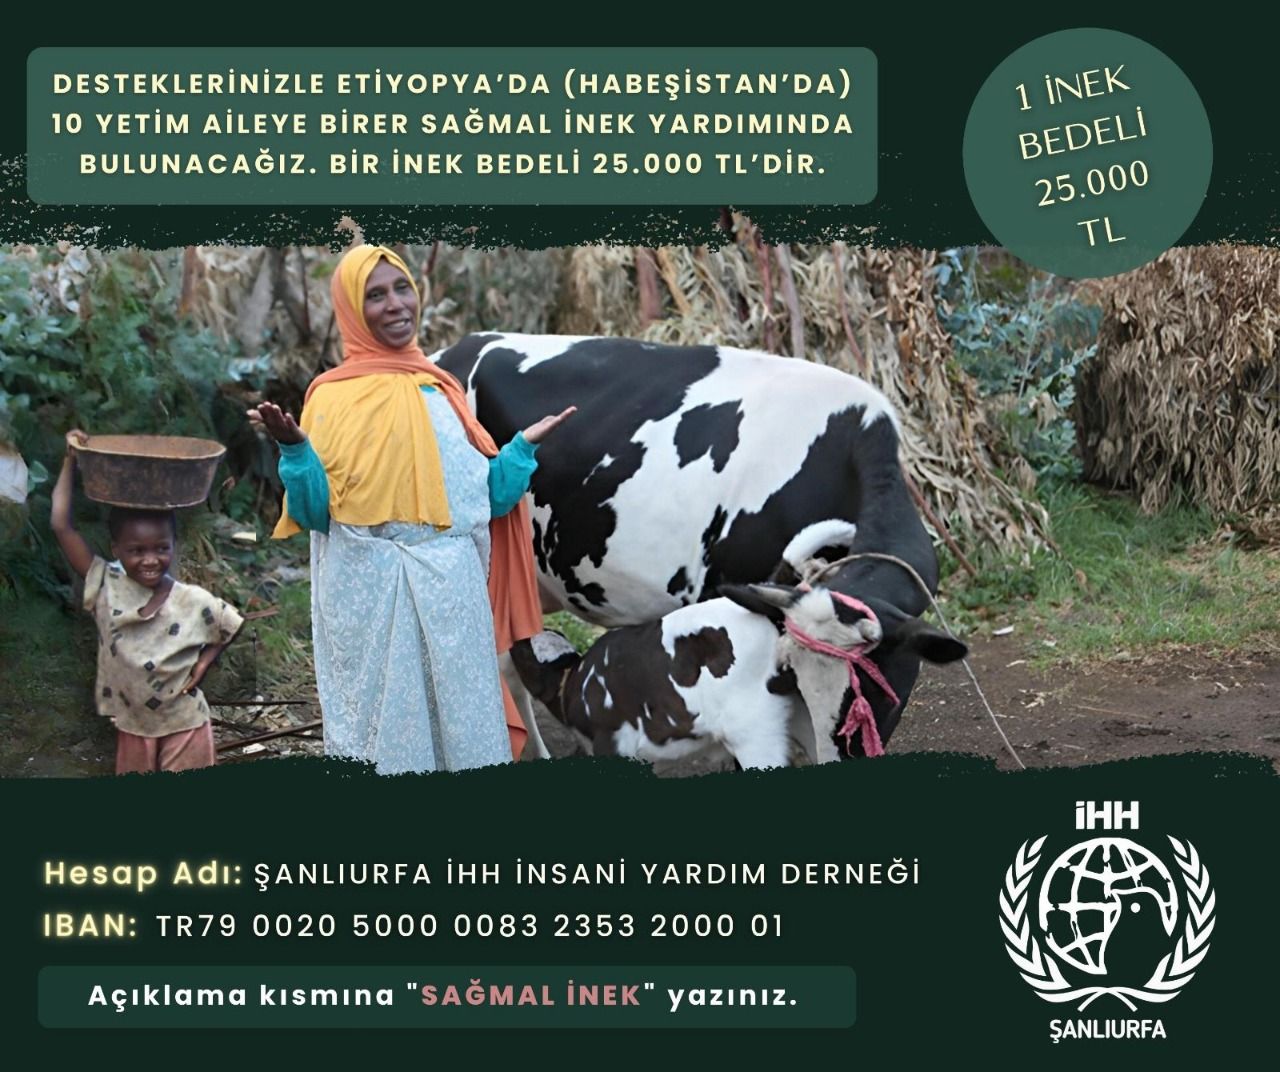 Şanlıurfa İHH’dan Etiyopyalı/Habeşistanlı yetim ailelere inek desteği